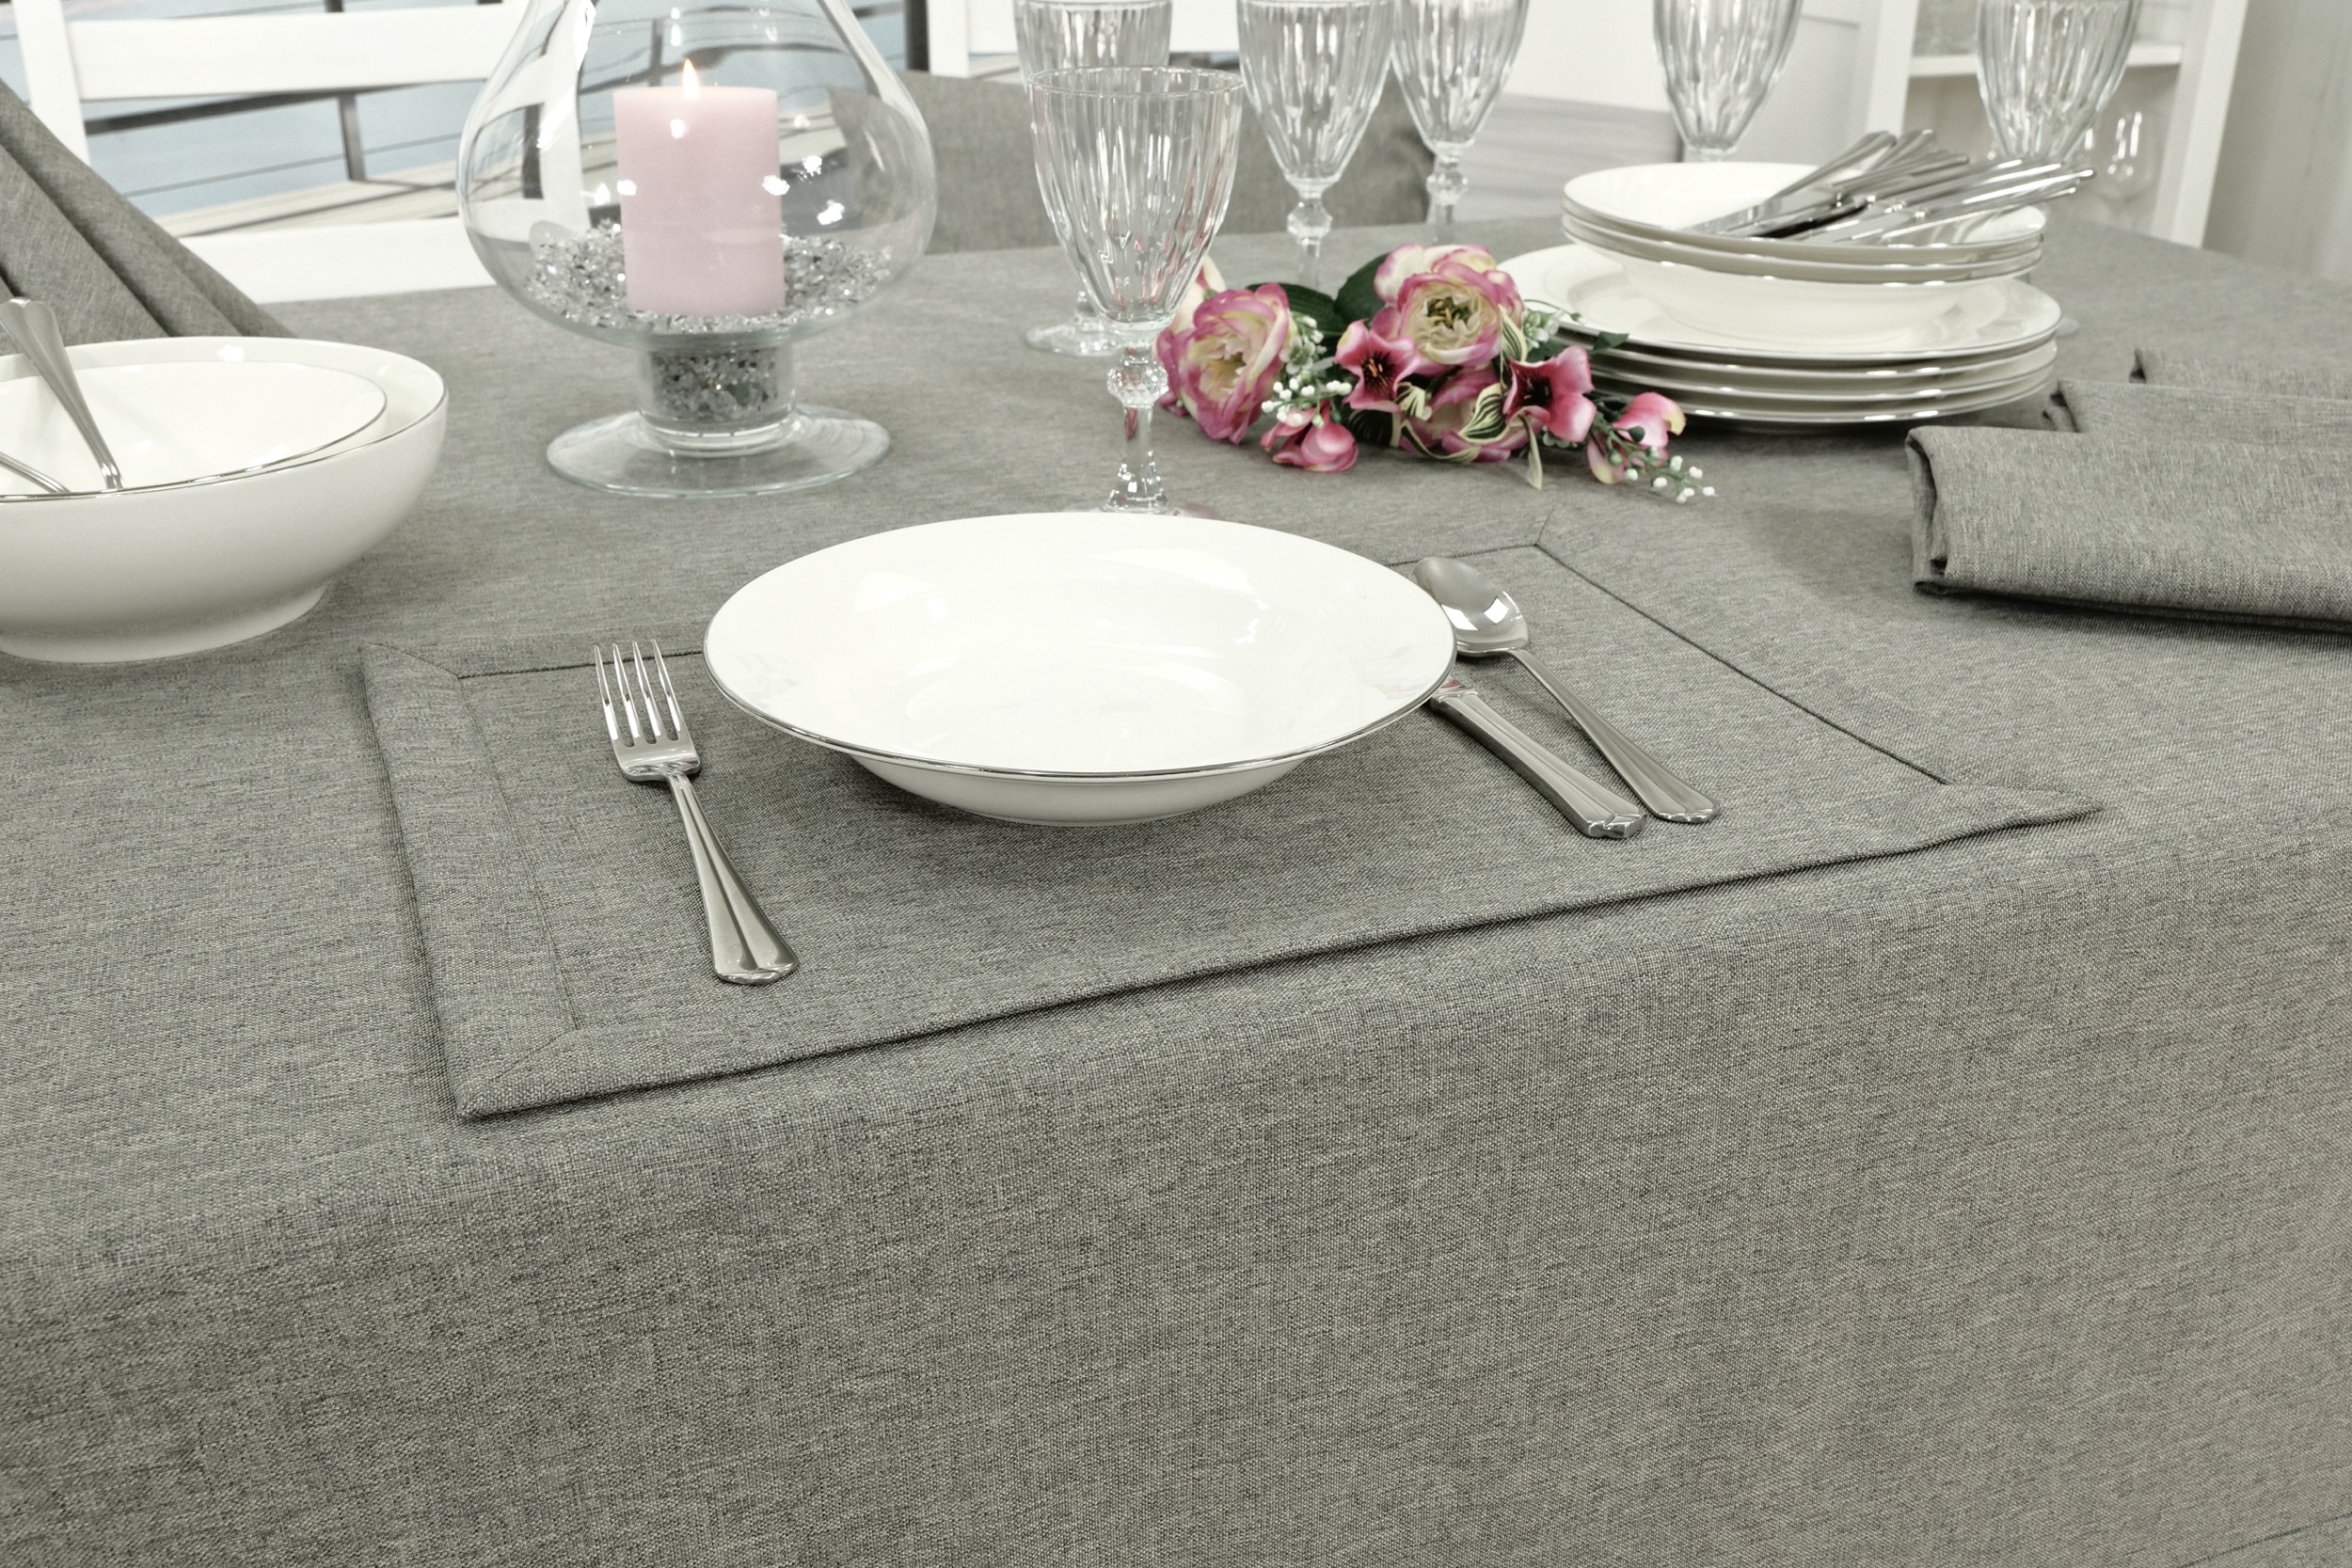 Edle Tischdecke Grau einfarbig Peony Breite 120 cm